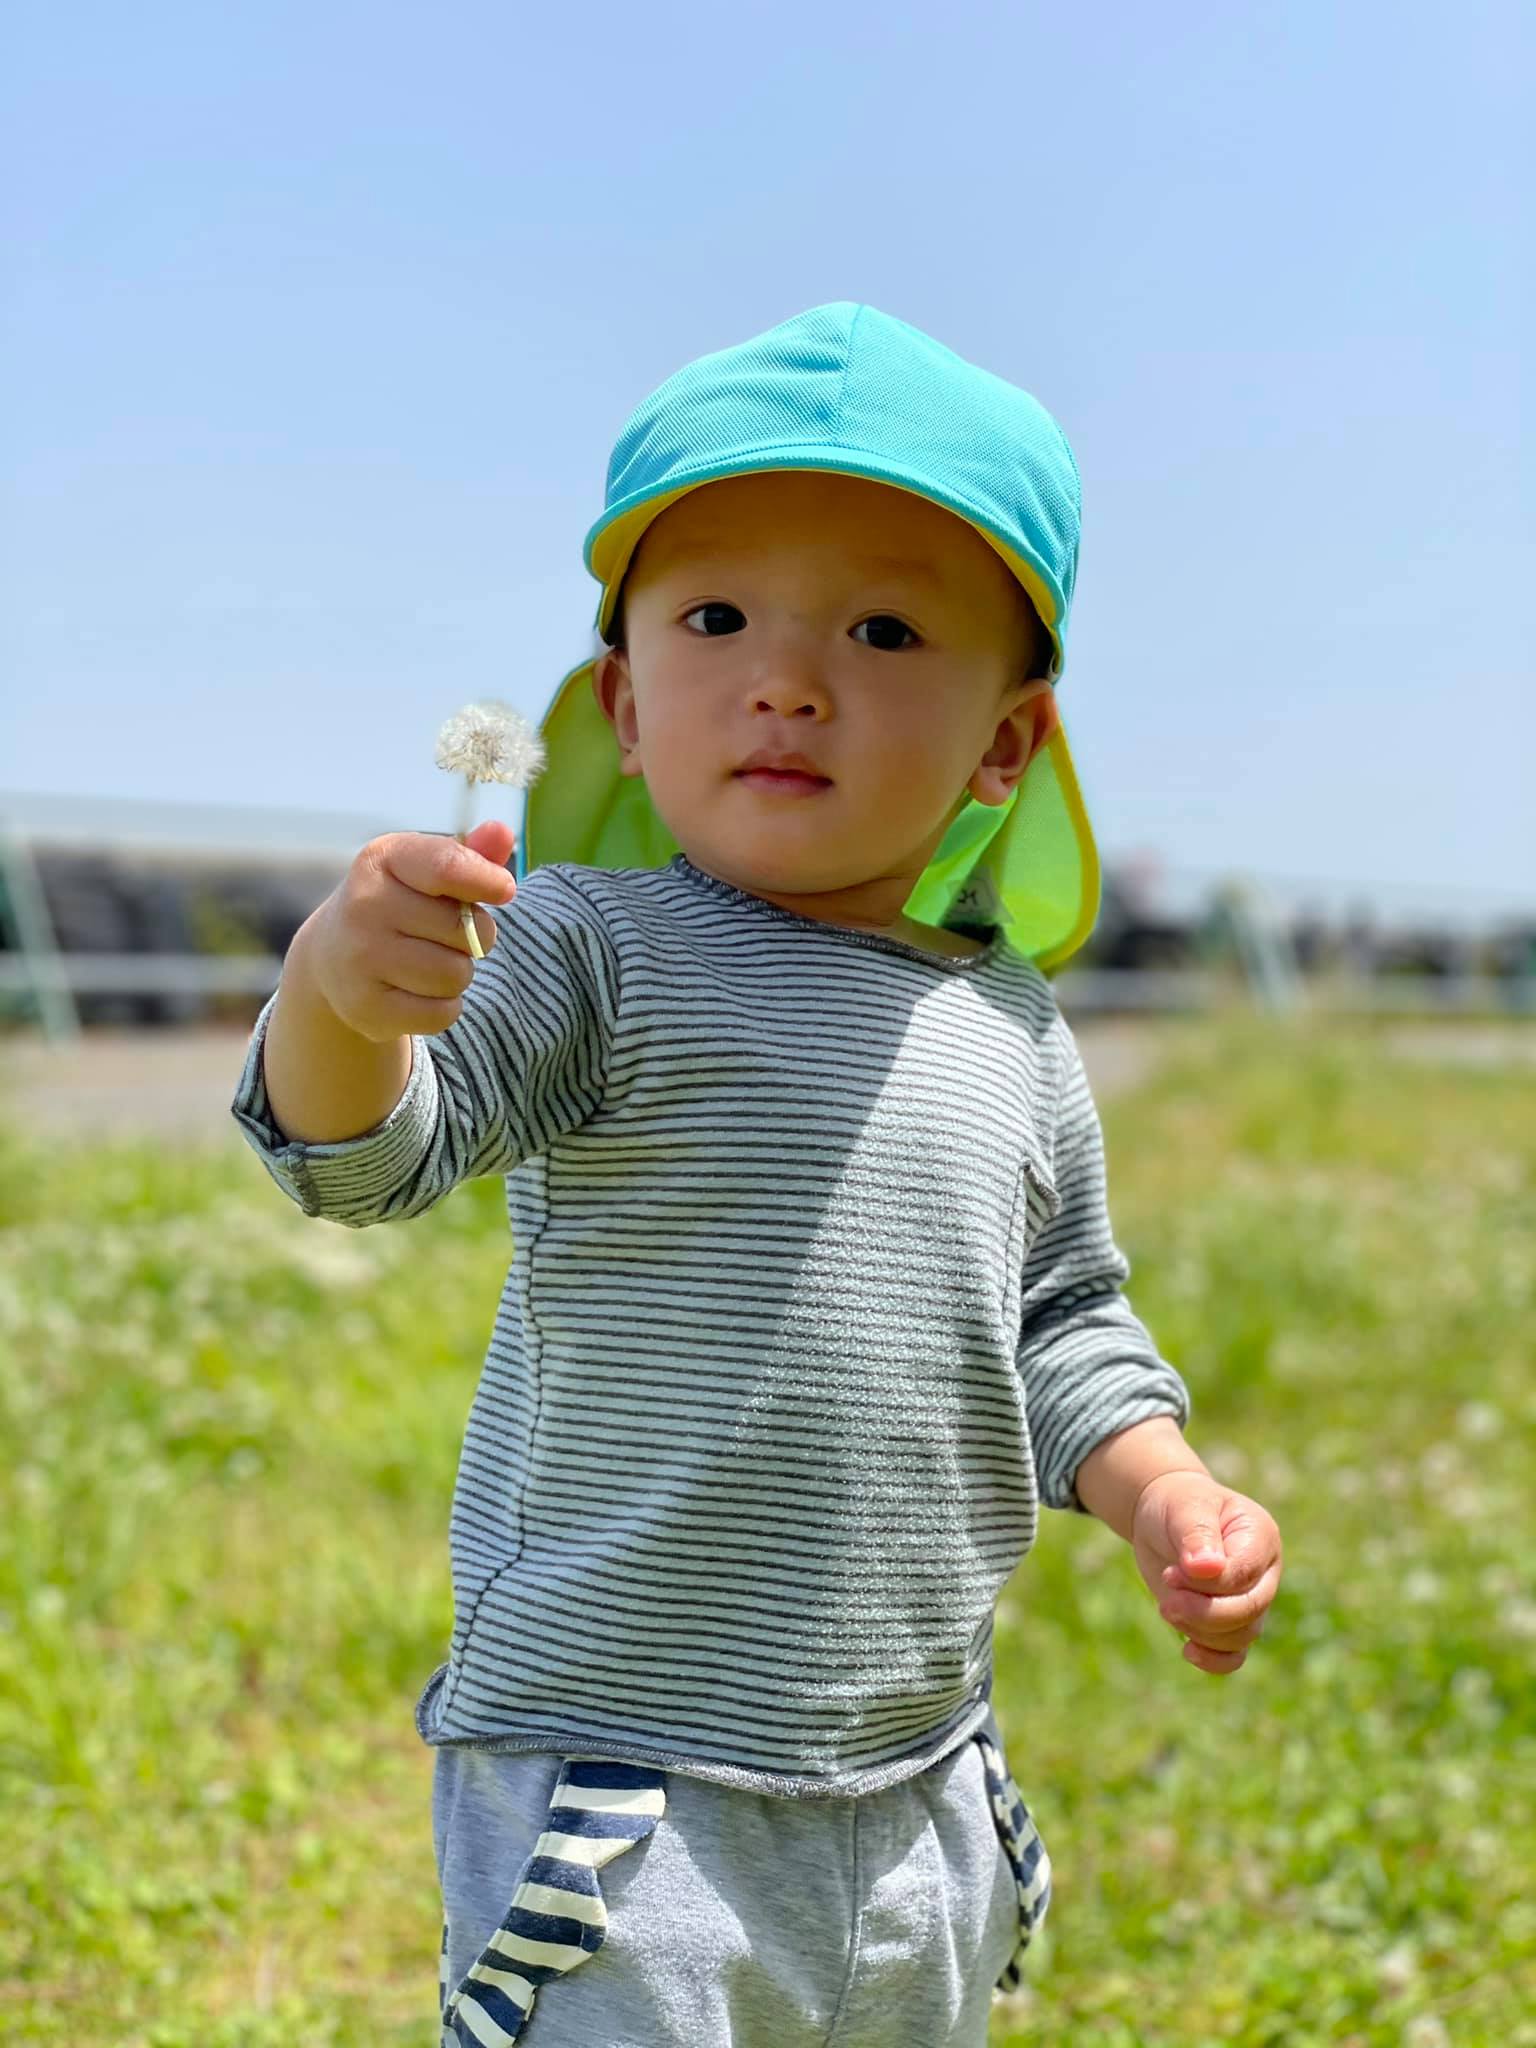 Hành trình thuê nhà và xin học mẫu giáo cho con đầy gian nan ở Nhật Bản: Nhiều điểm khác biệt không ngờ, nghĩ thôi cũng đủ nhức óc - Ảnh 5.